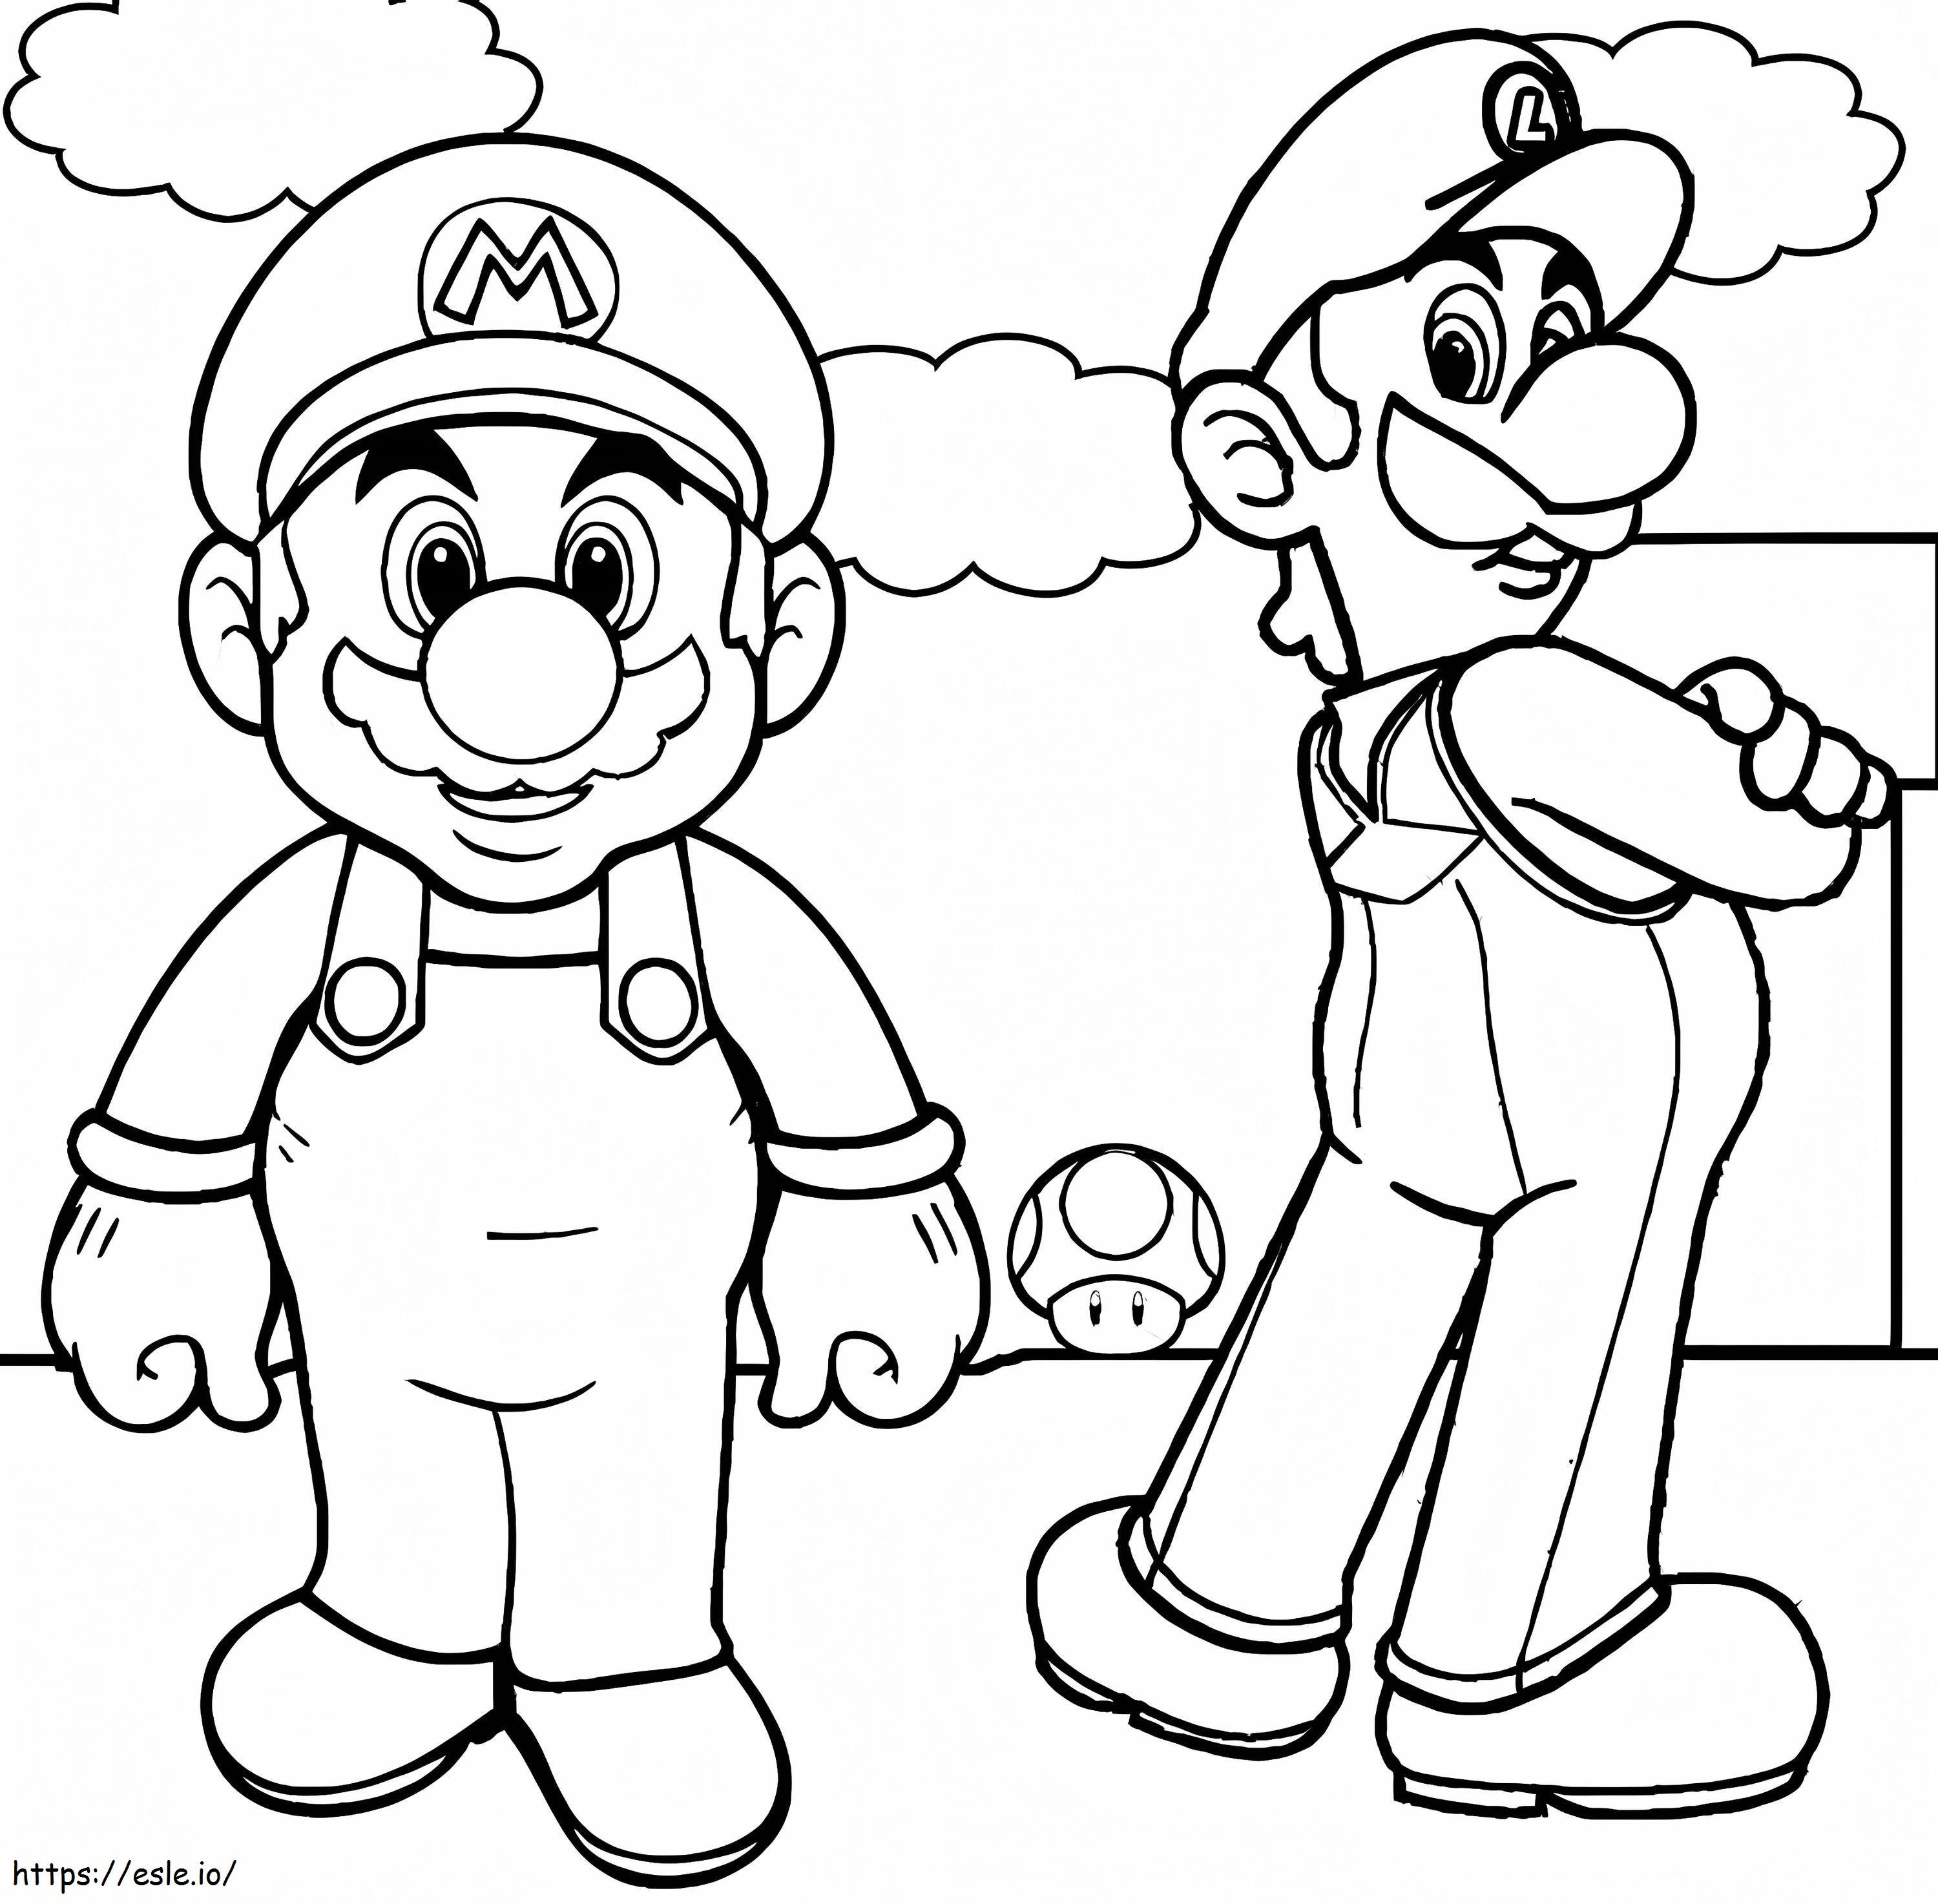 Luigi Básico și Mario de colorat